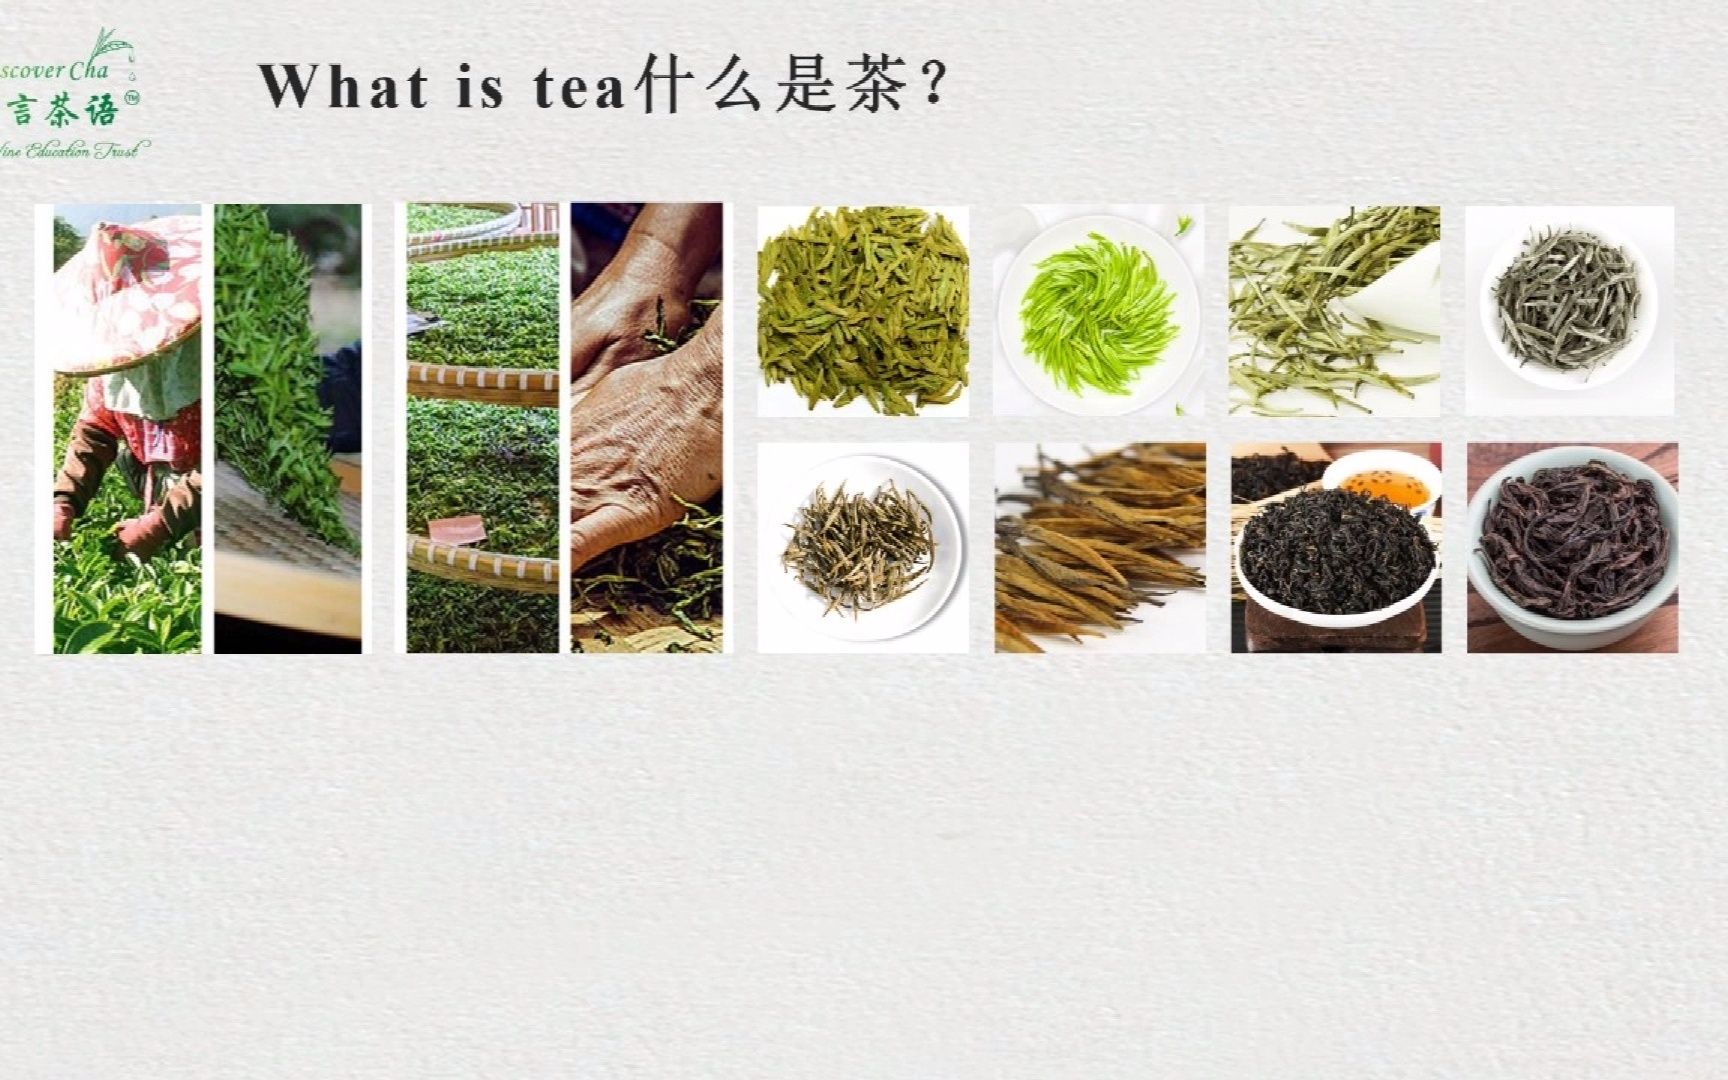 零基础茶艺英语 第二课 茶叶的分类 Classification